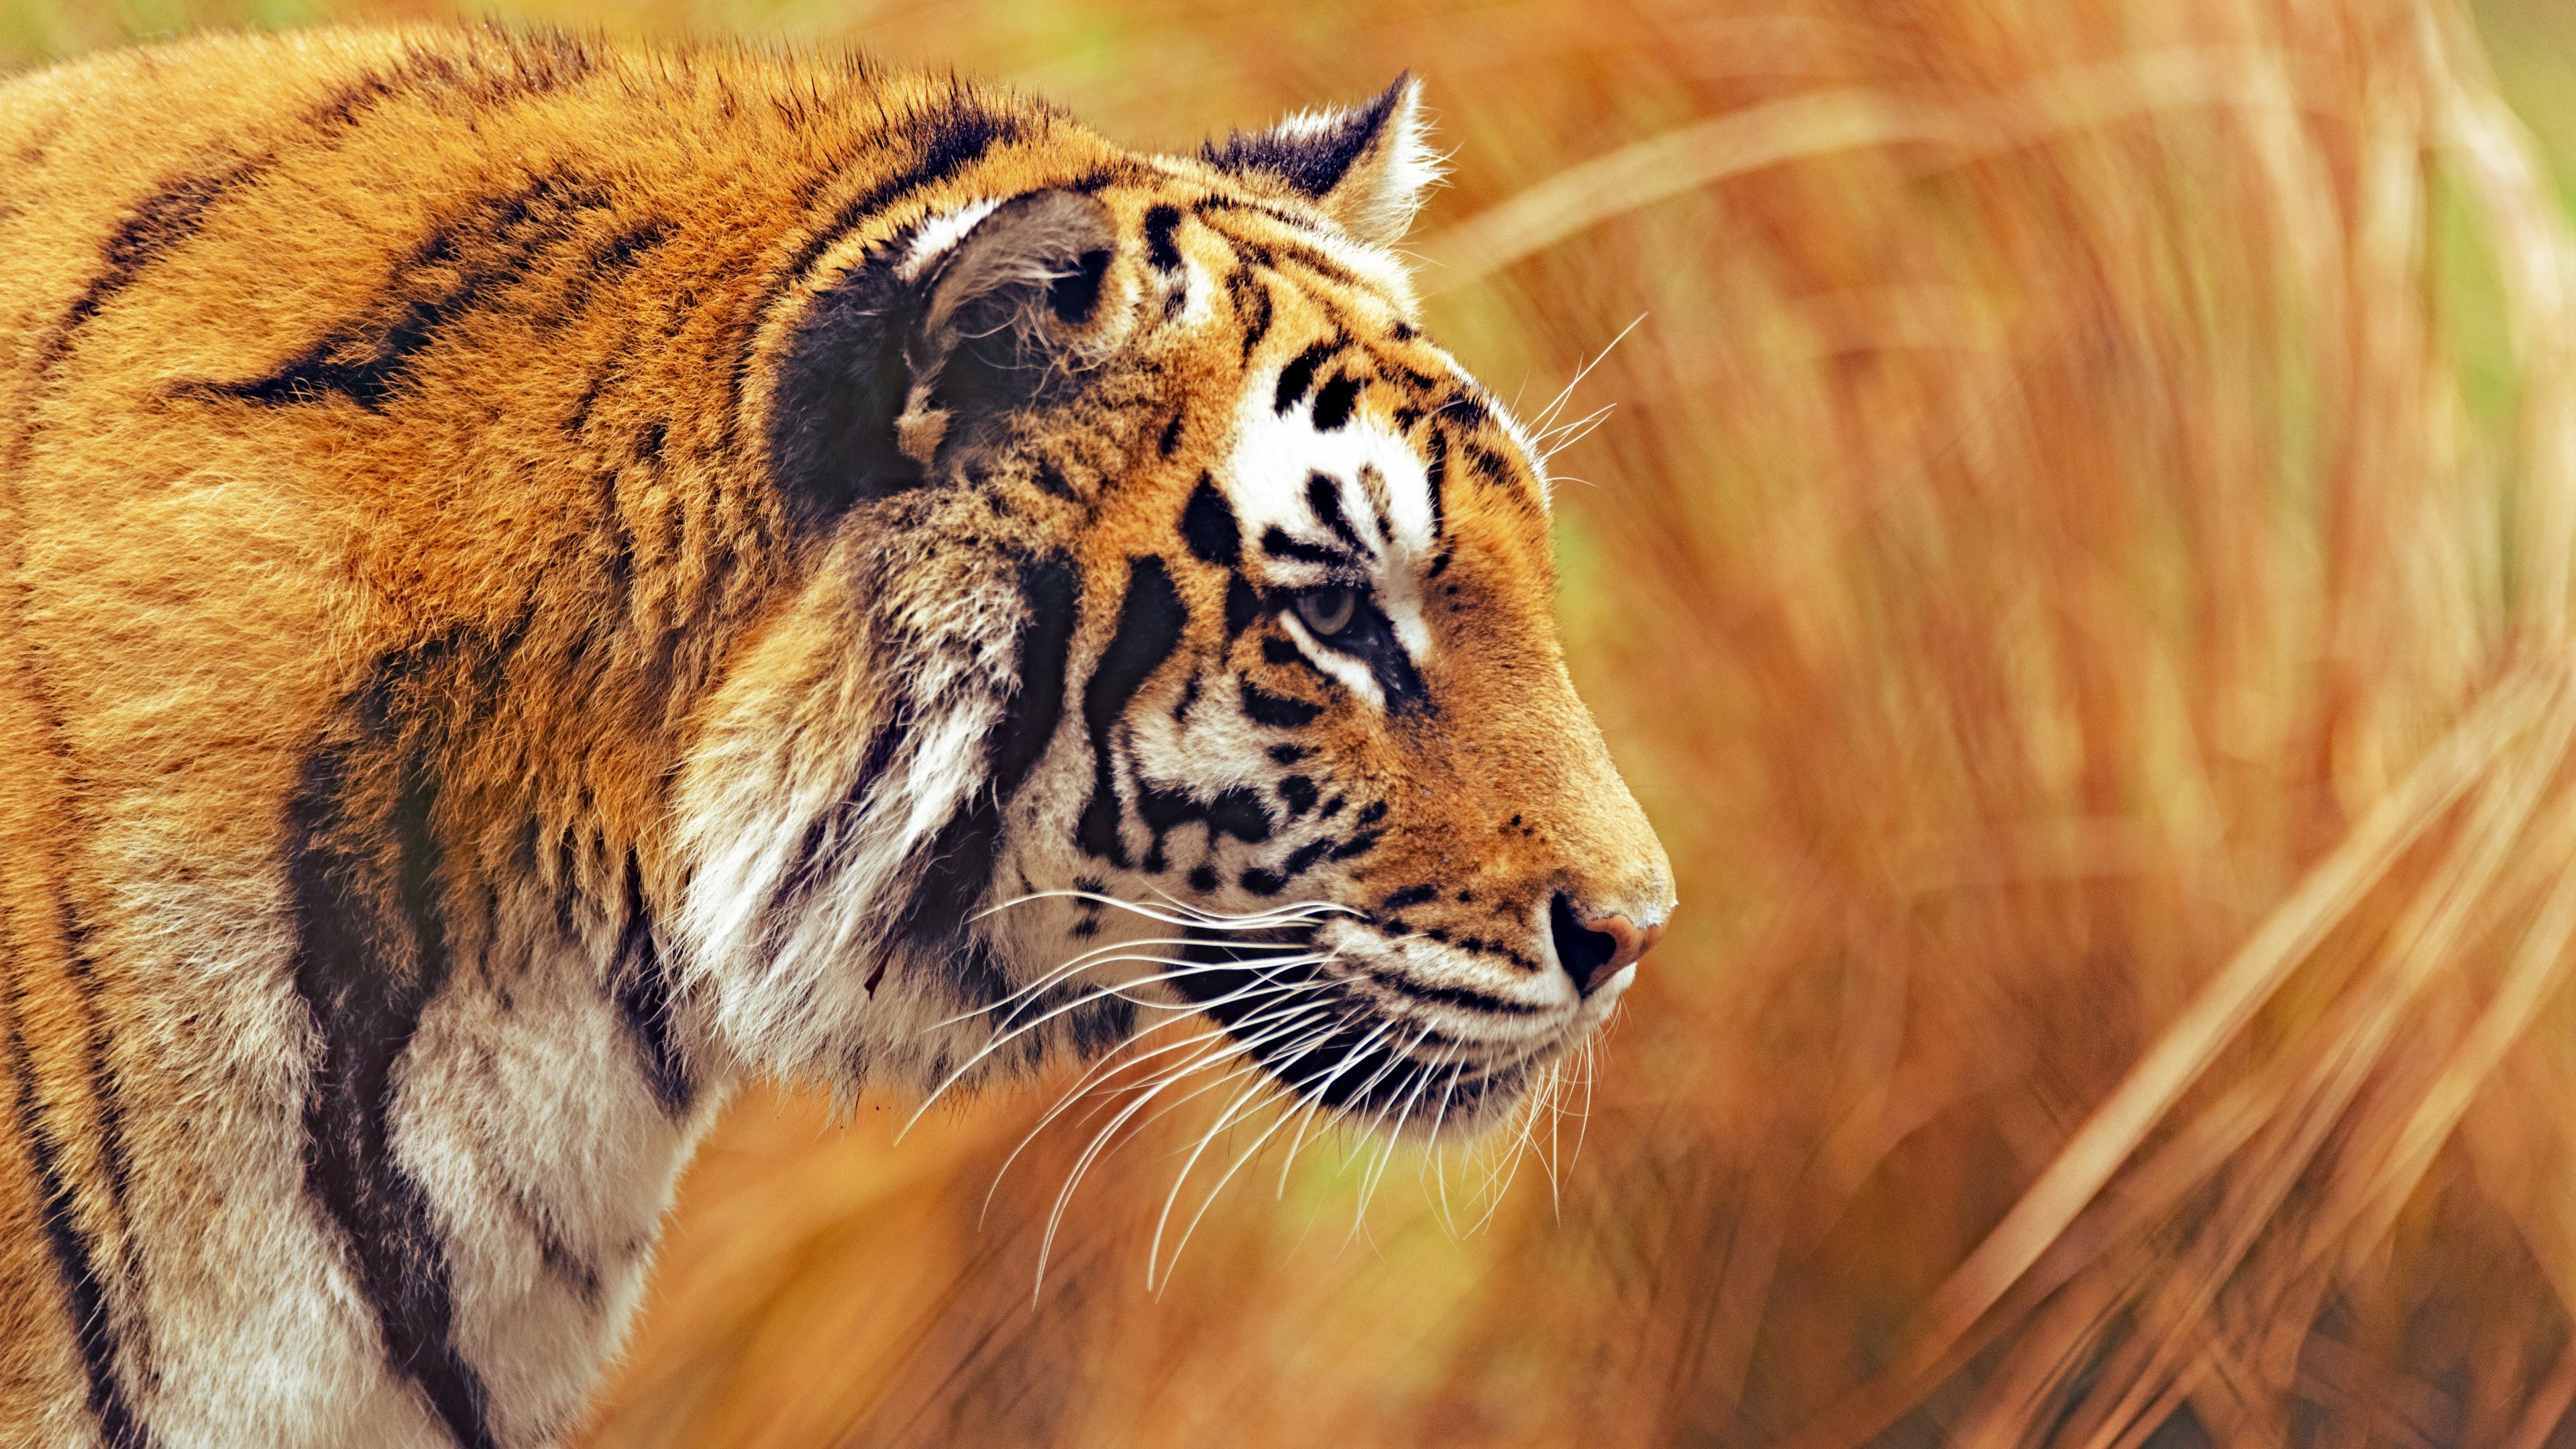 os x tiger wallpaper,tiger,tierwelt,landtier,bengalischer tiger,schnurrhaare